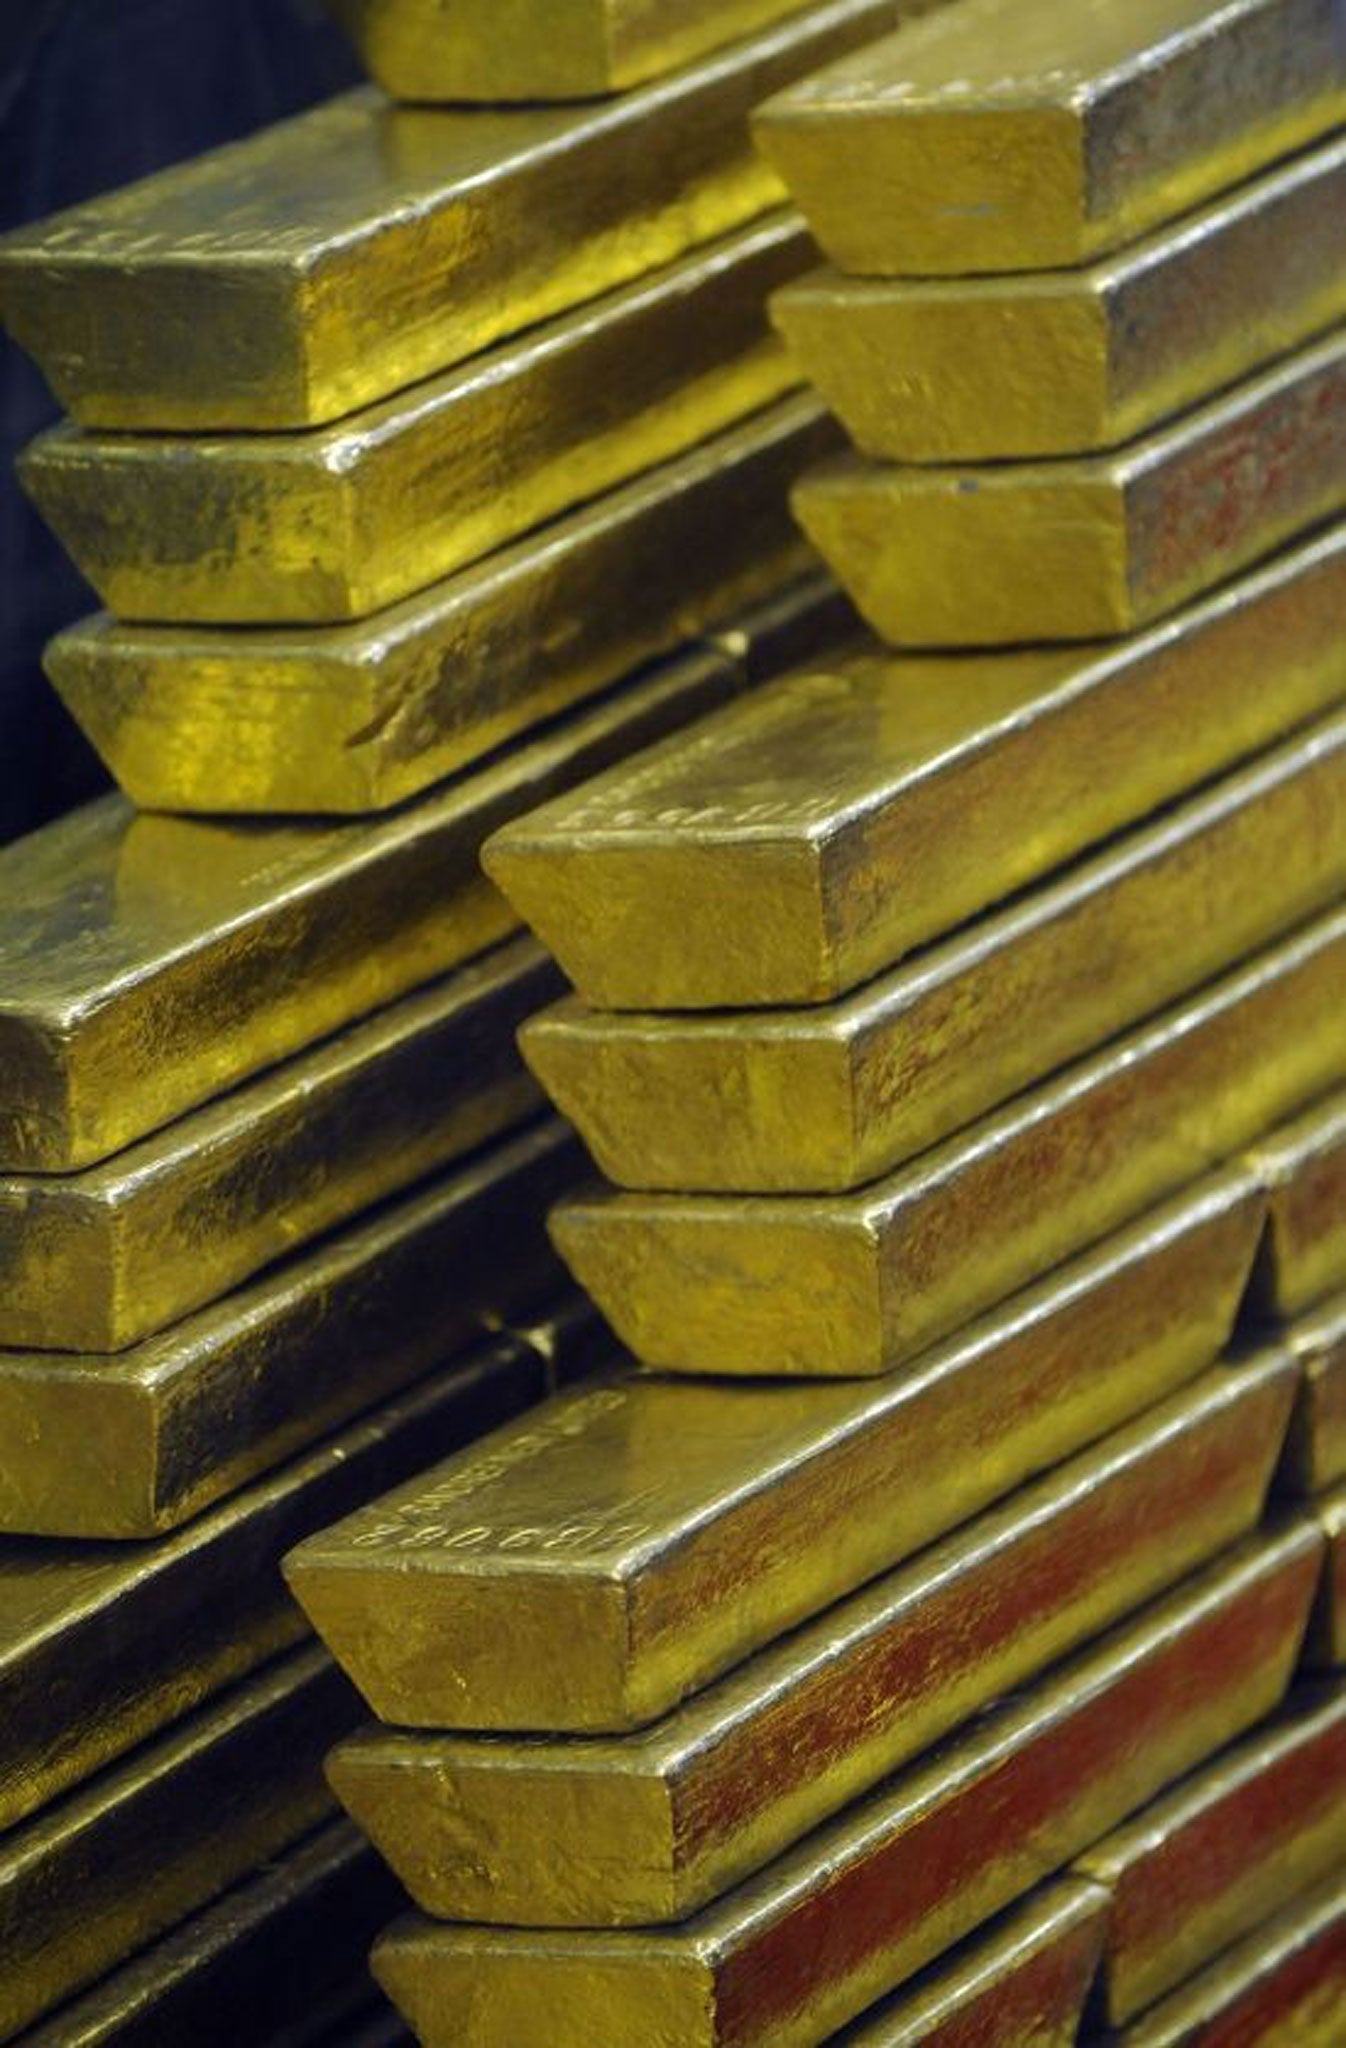 Gold has long drawn investors